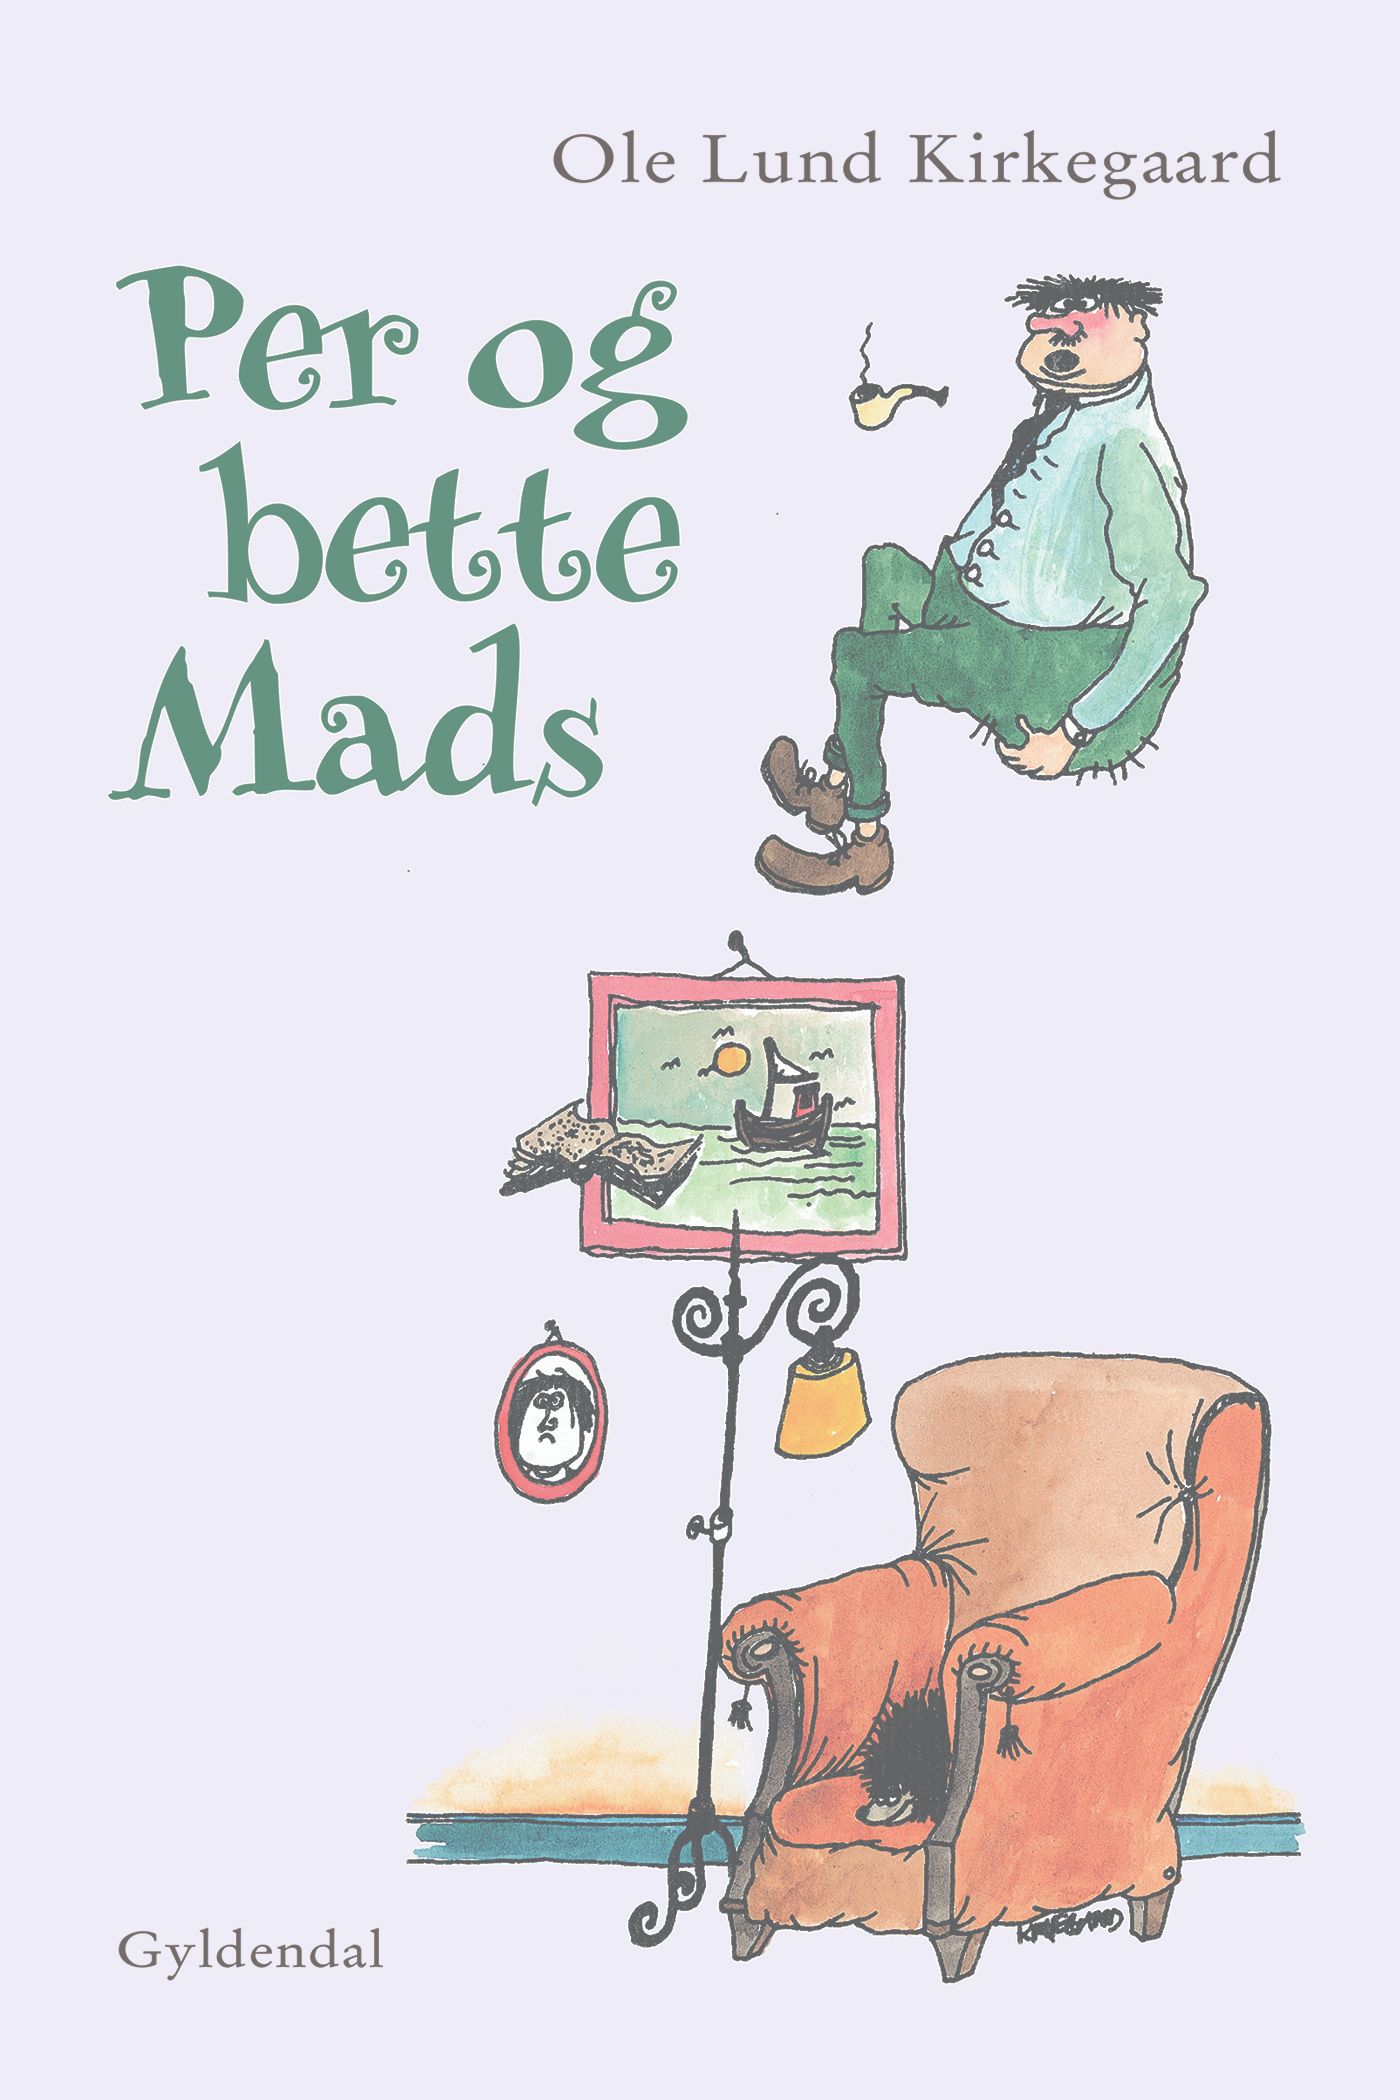 Per og bette Mads, e-bog af Ole Lund Kirkegaard